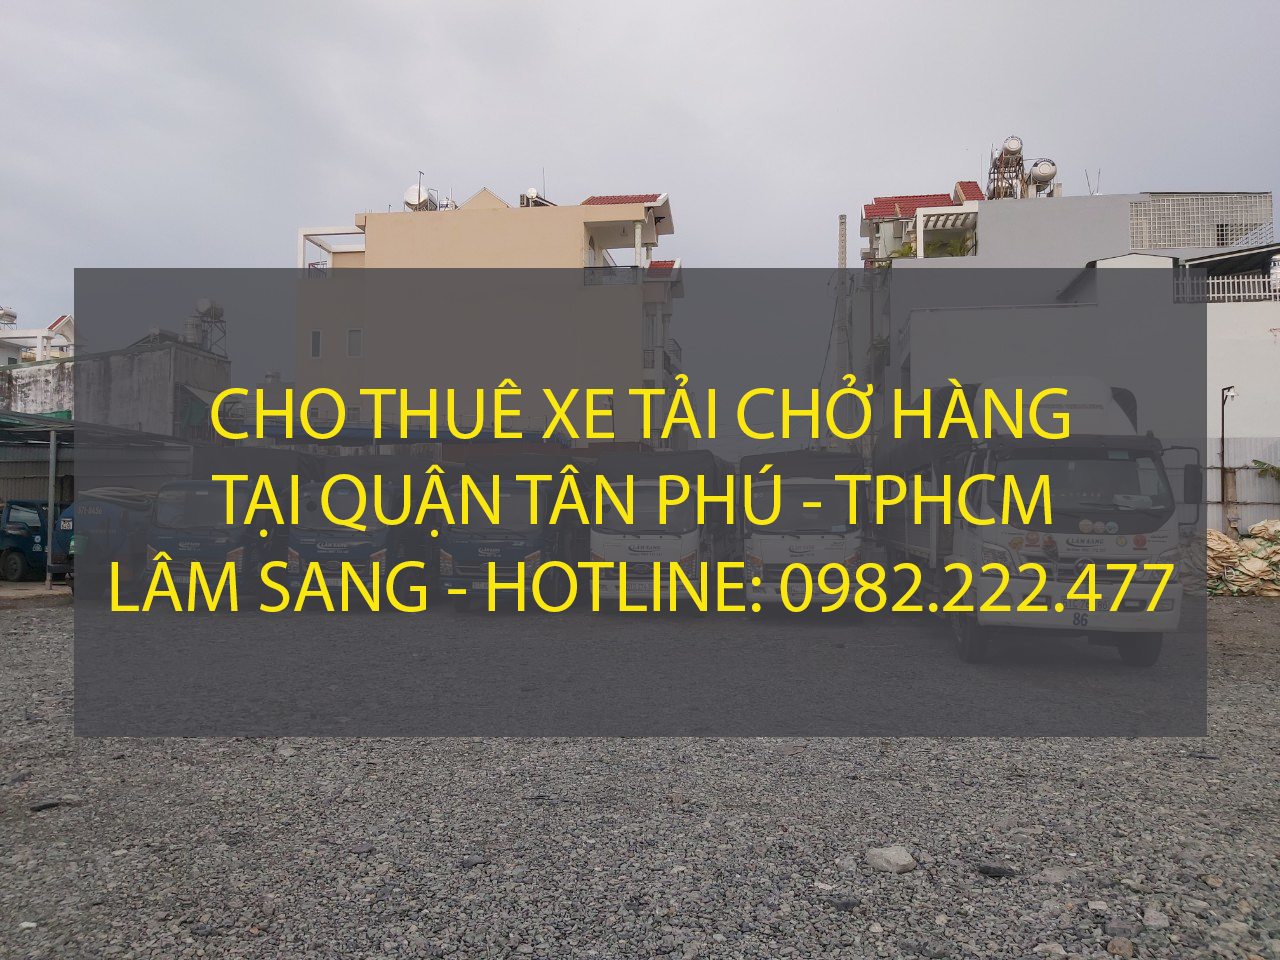 Cho thuê xe tải chở hàng tại Quận Tân Phú – Vận tải Lâm Sang